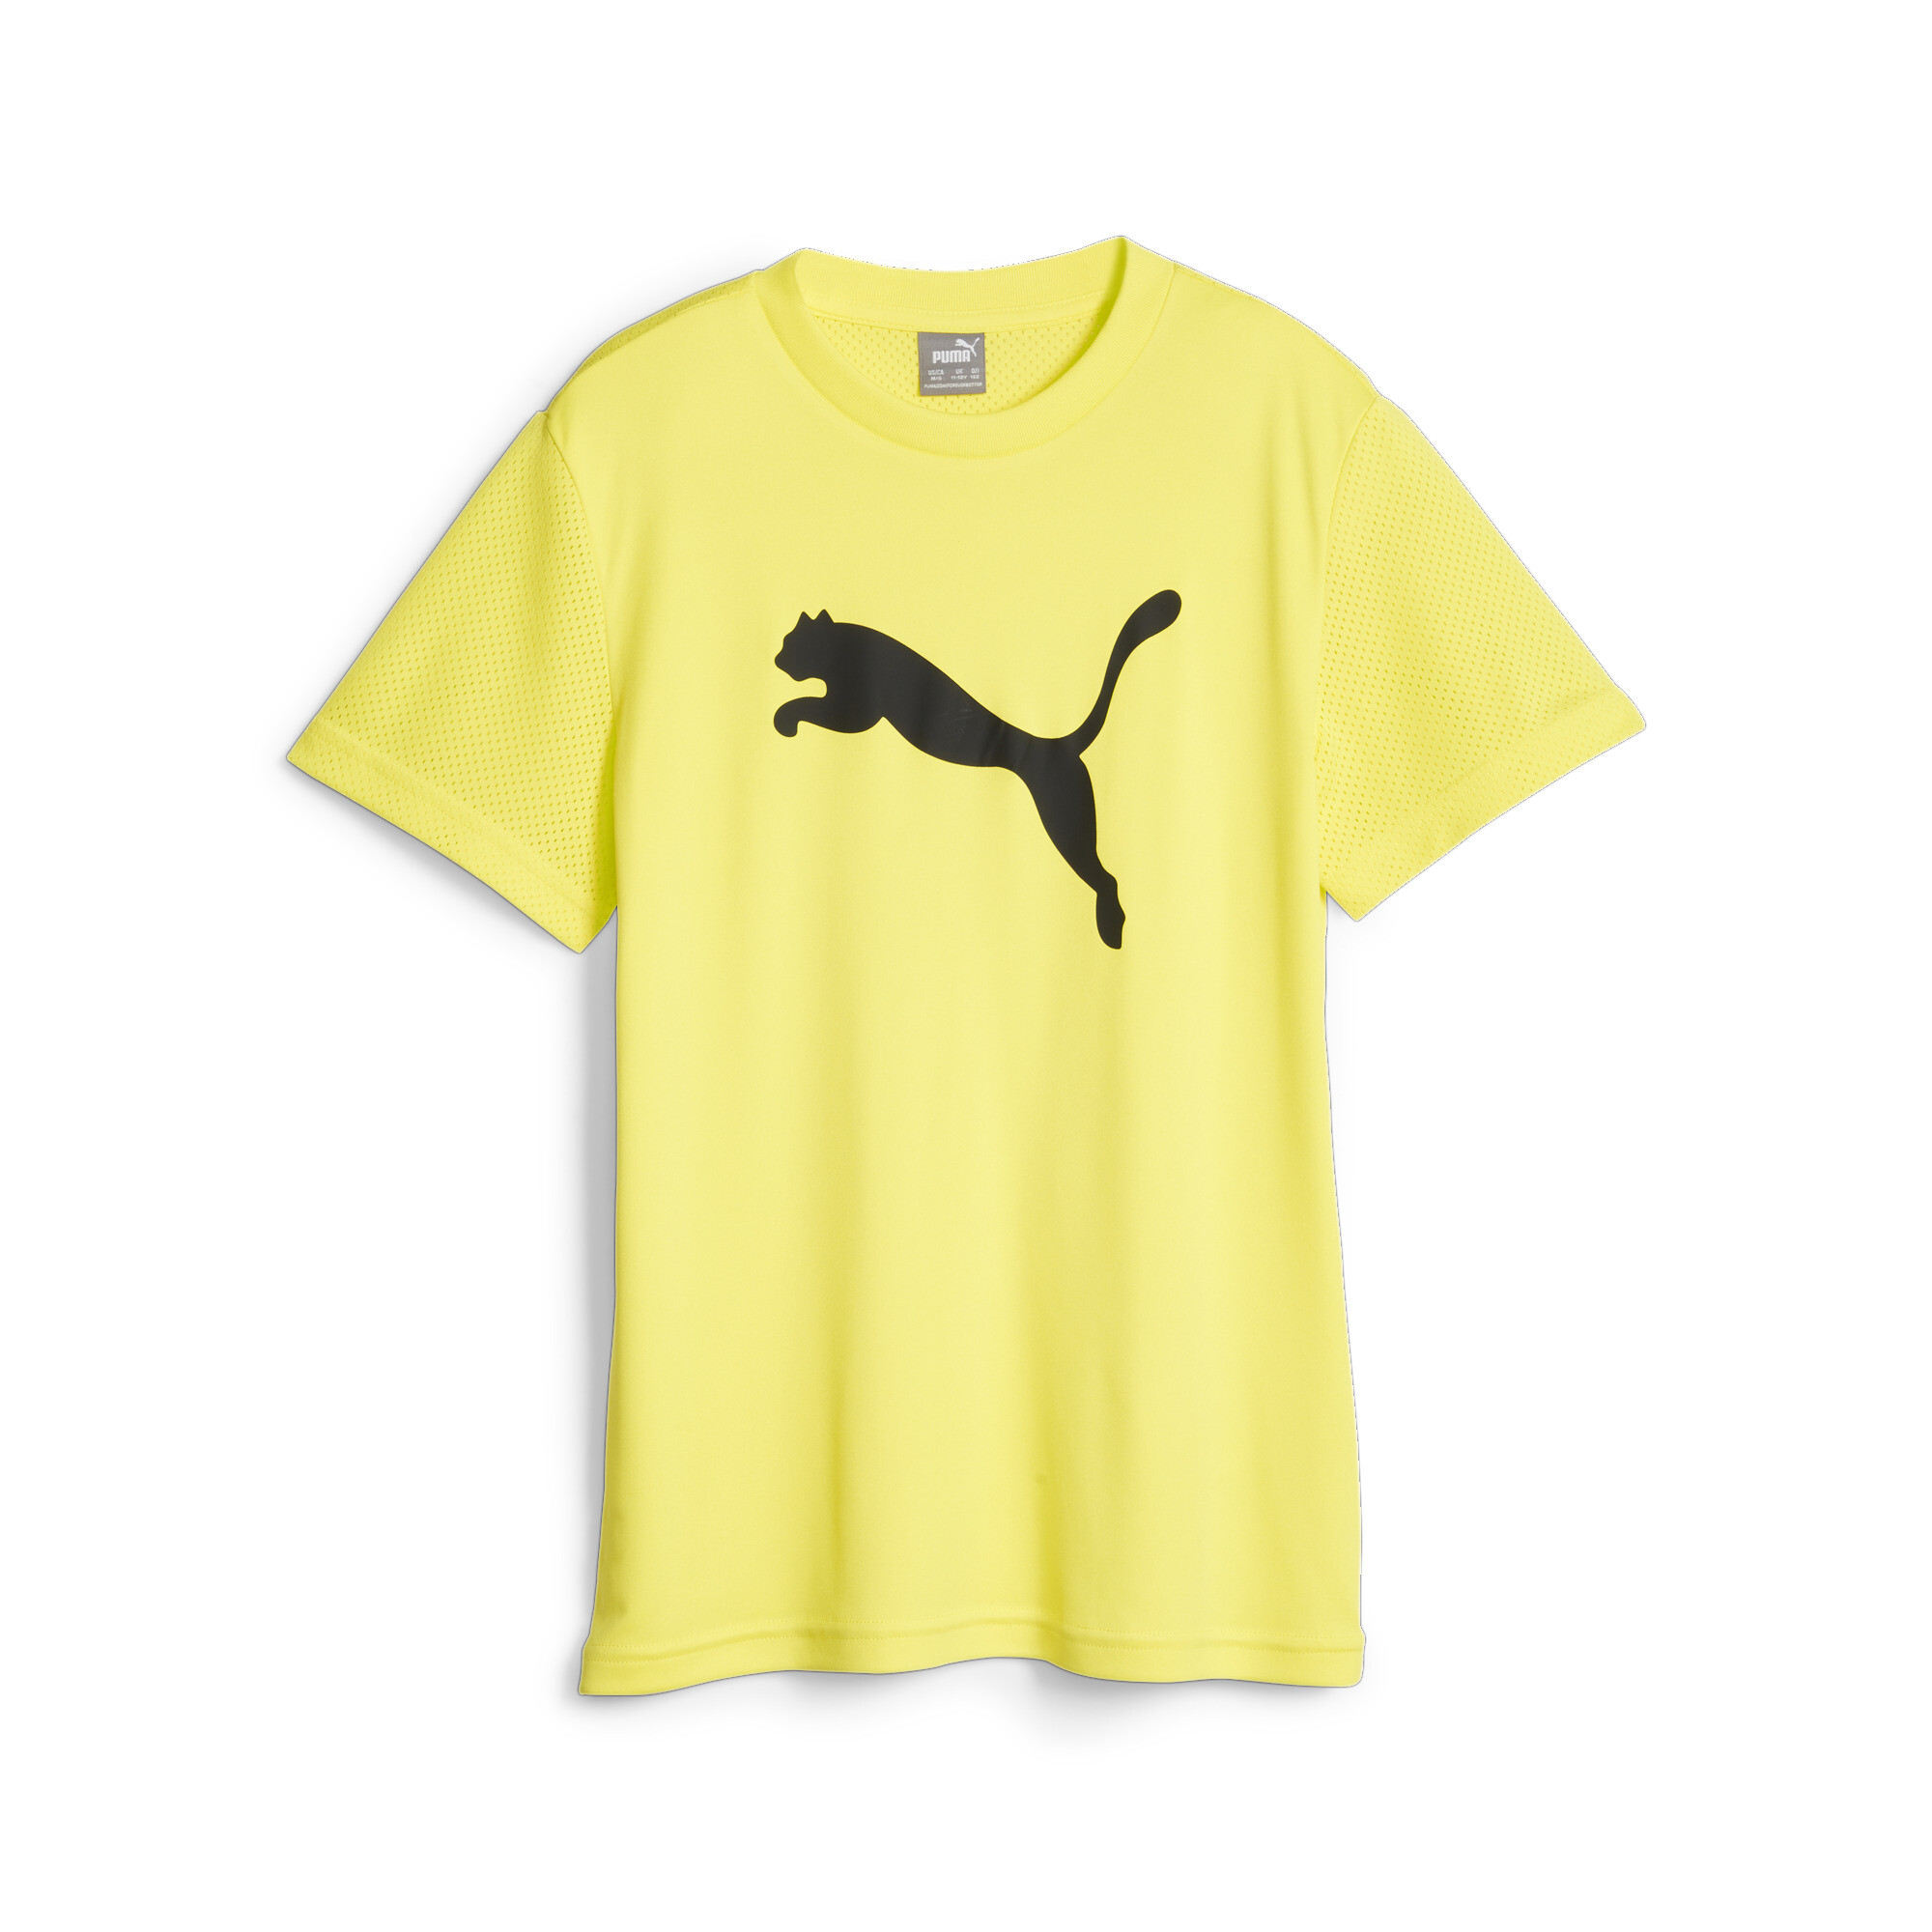  プーマ キッズ ボーイズ ACTIVE SPORTS ポリ キャット Tシャツ 120-160cm メンズ Fluro Yellow Pes ｜PUMA.com